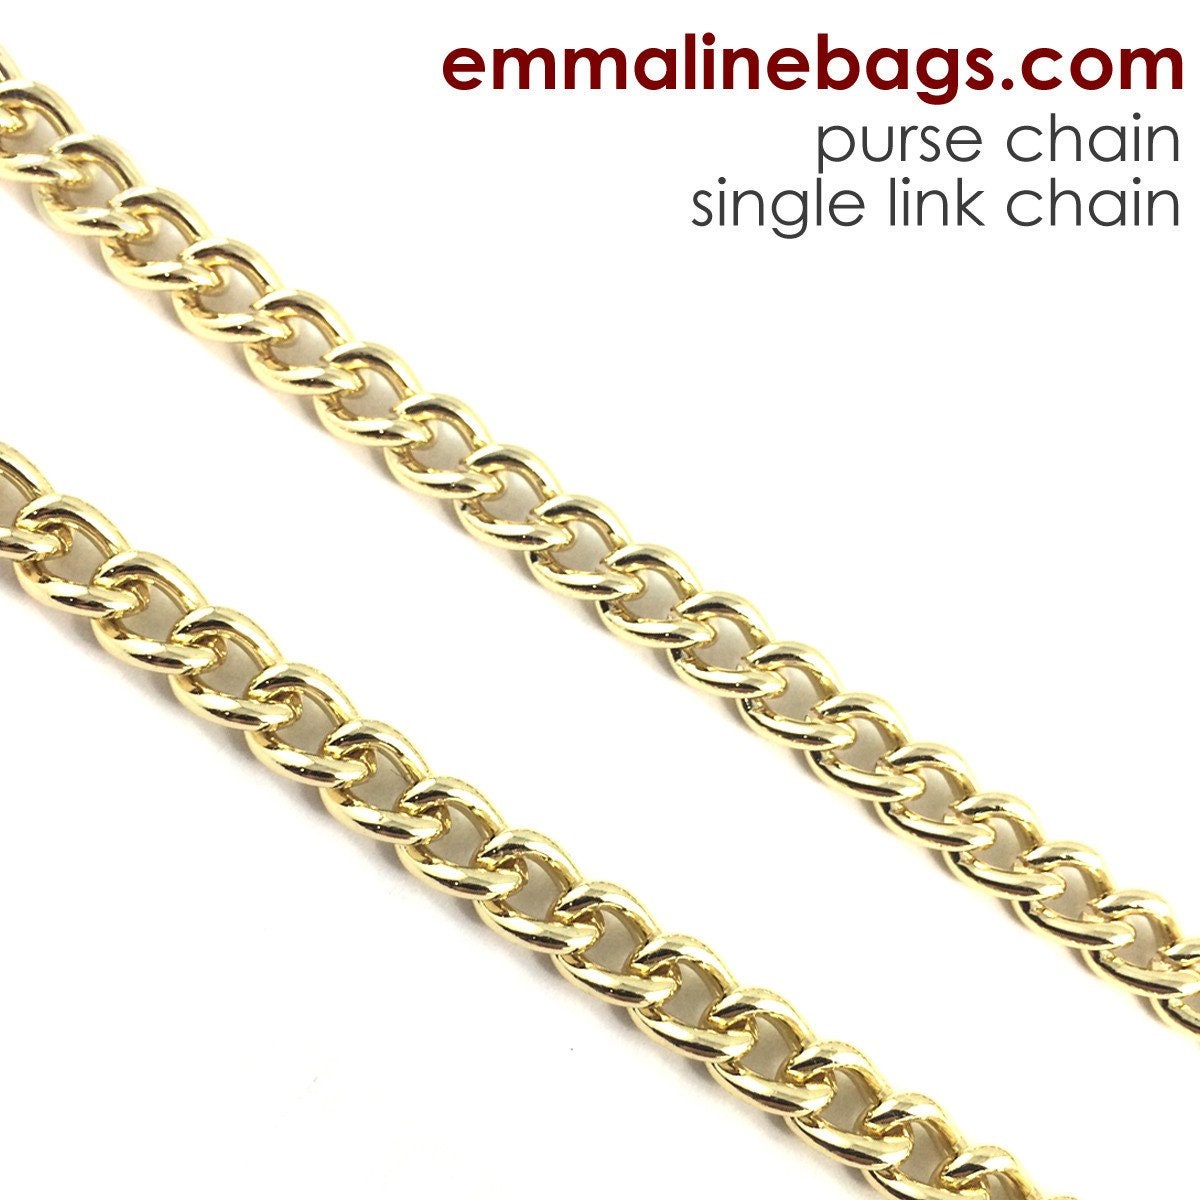 Purse Chain: **SINGLE-LINK** Chain